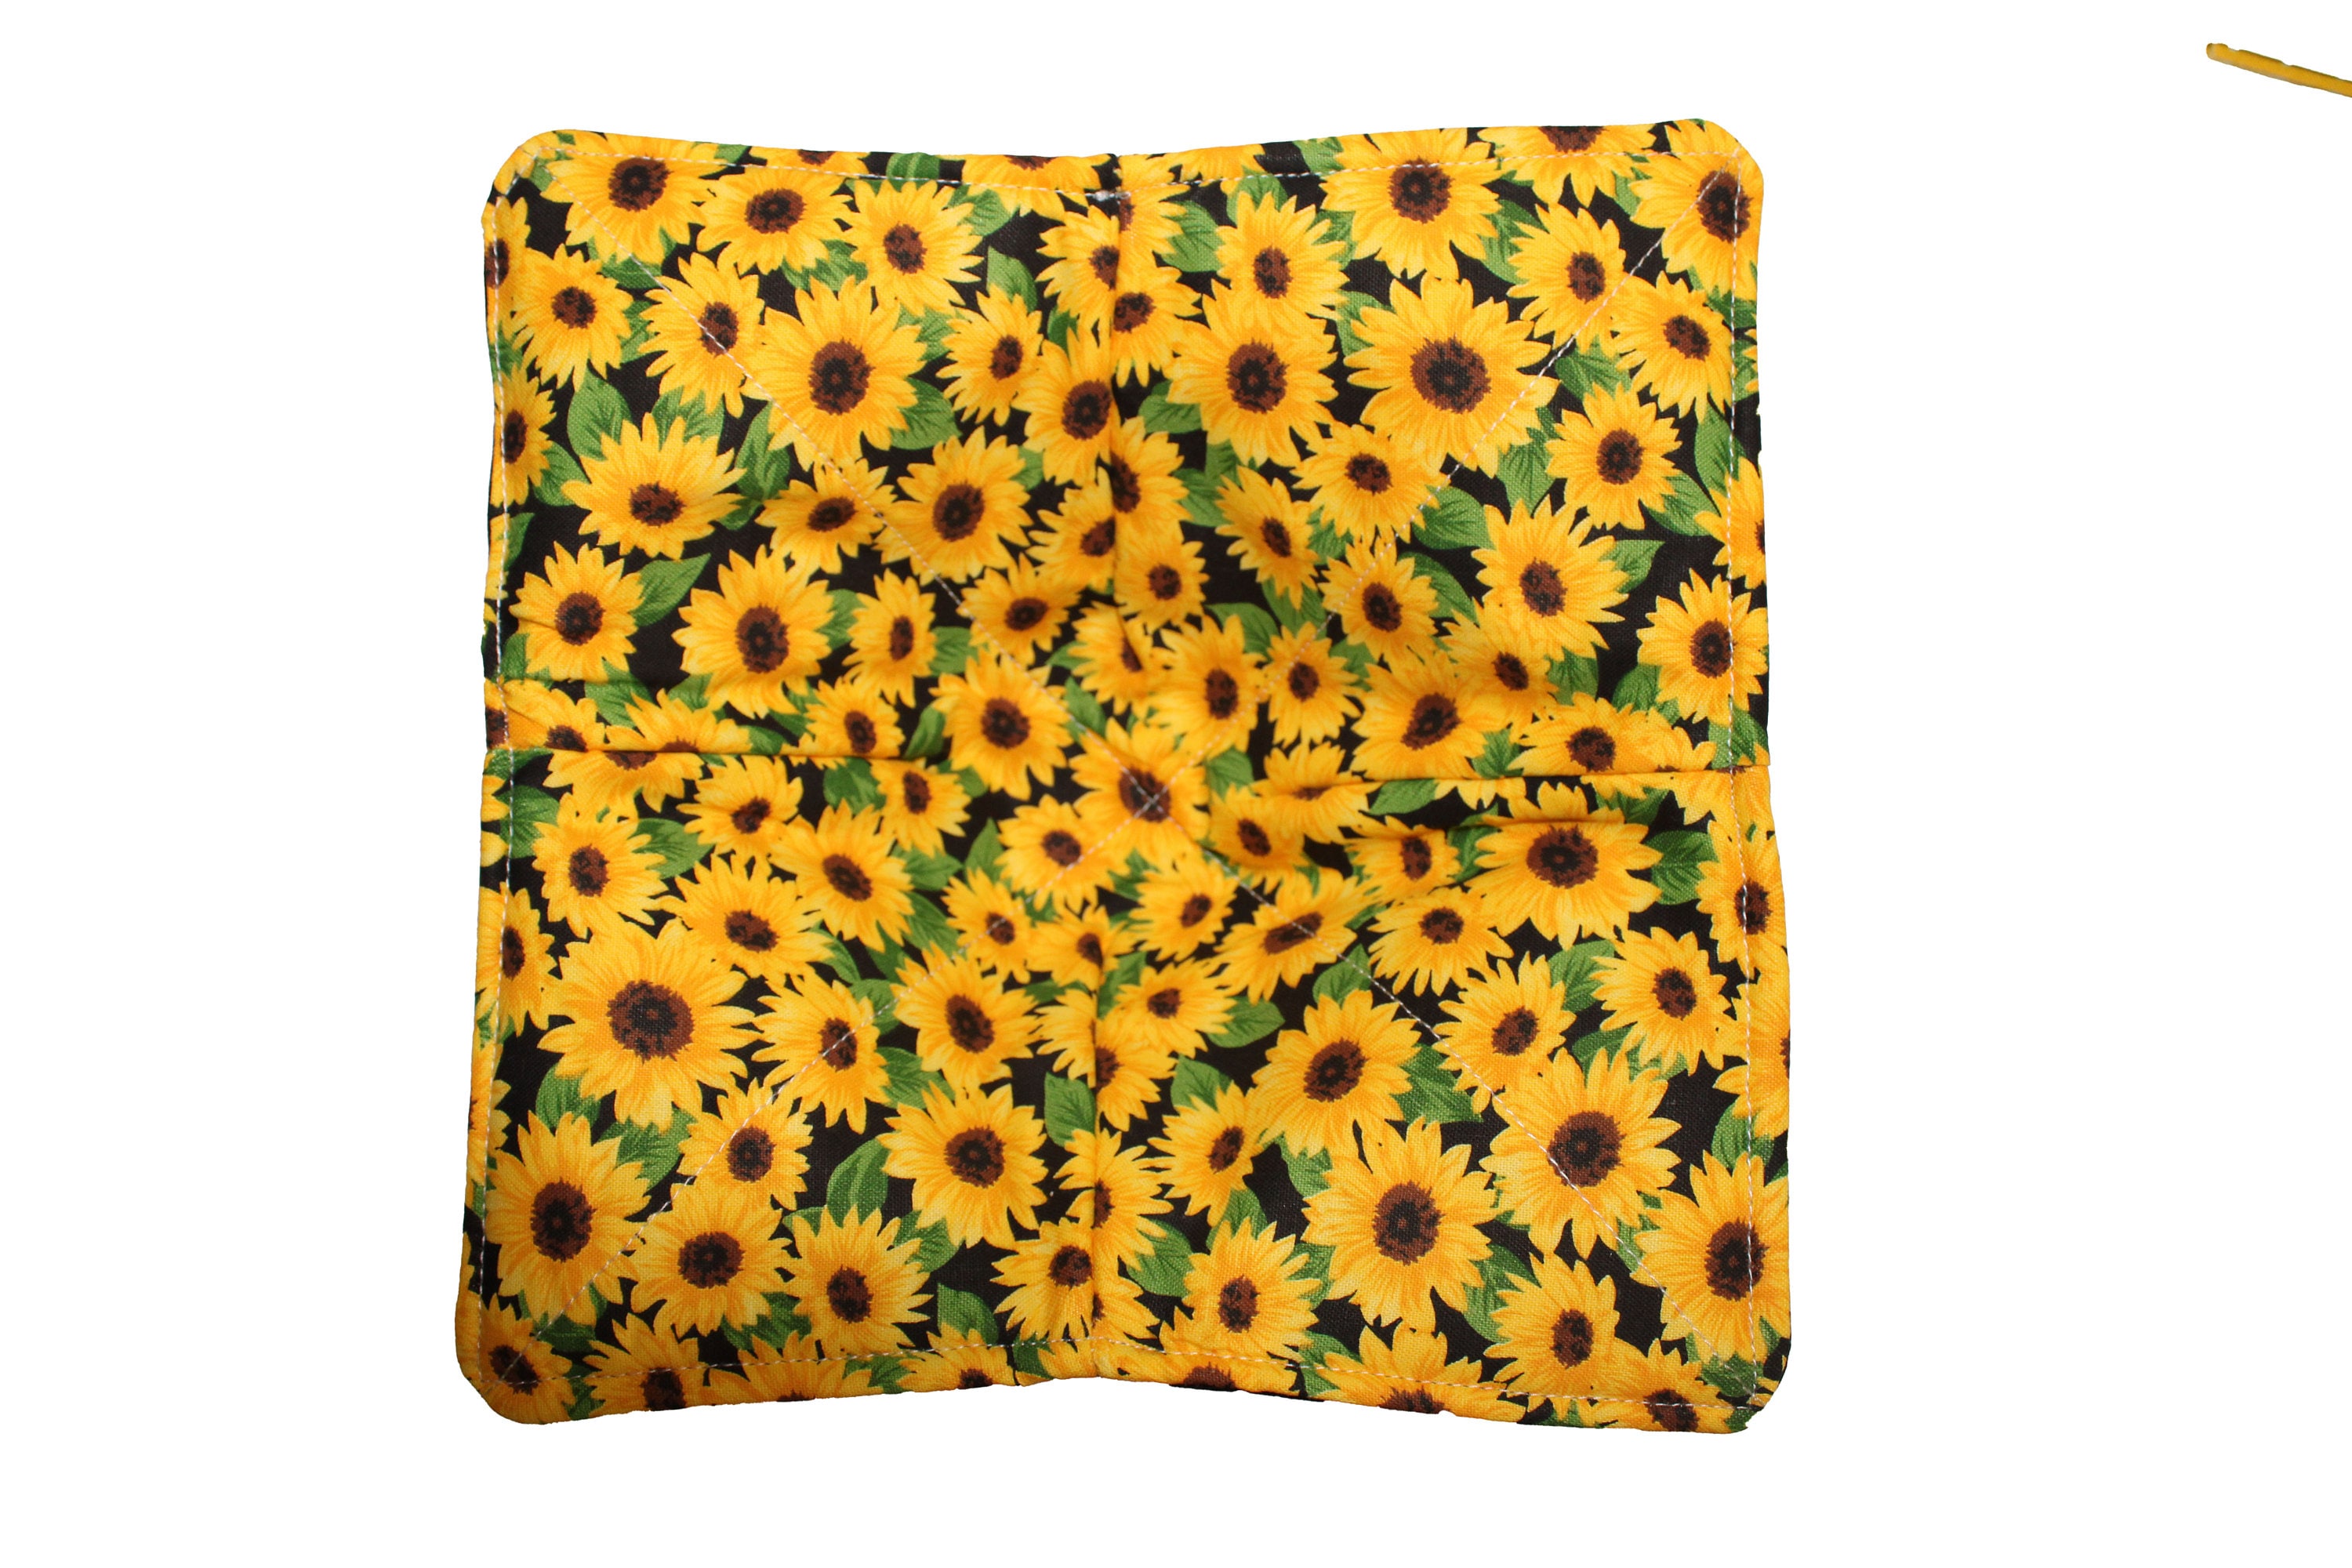 Sunflower Bowl Cozies Yarn Pack